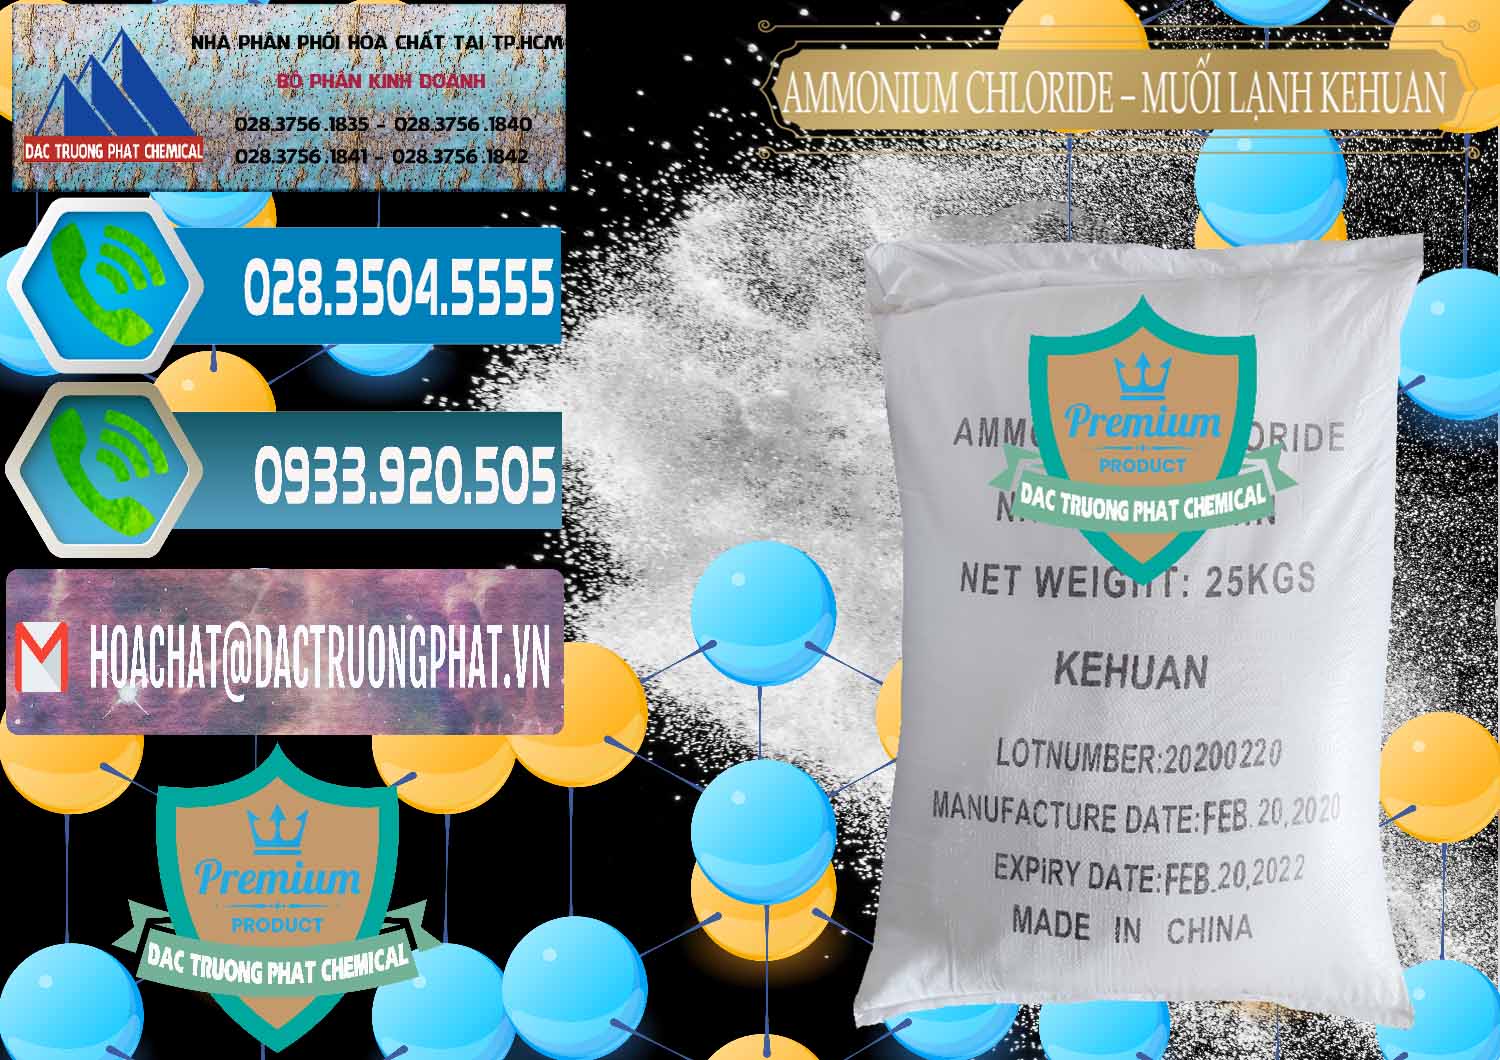 Nơi bán & phân phối Ammonium Chloride – NH4CL Muối Lạnh Kehuan Trung Quốc China - 0022 - Chuyên cung cấp - kinh doanh hóa chất tại TP.HCM - congtyhoachat.net